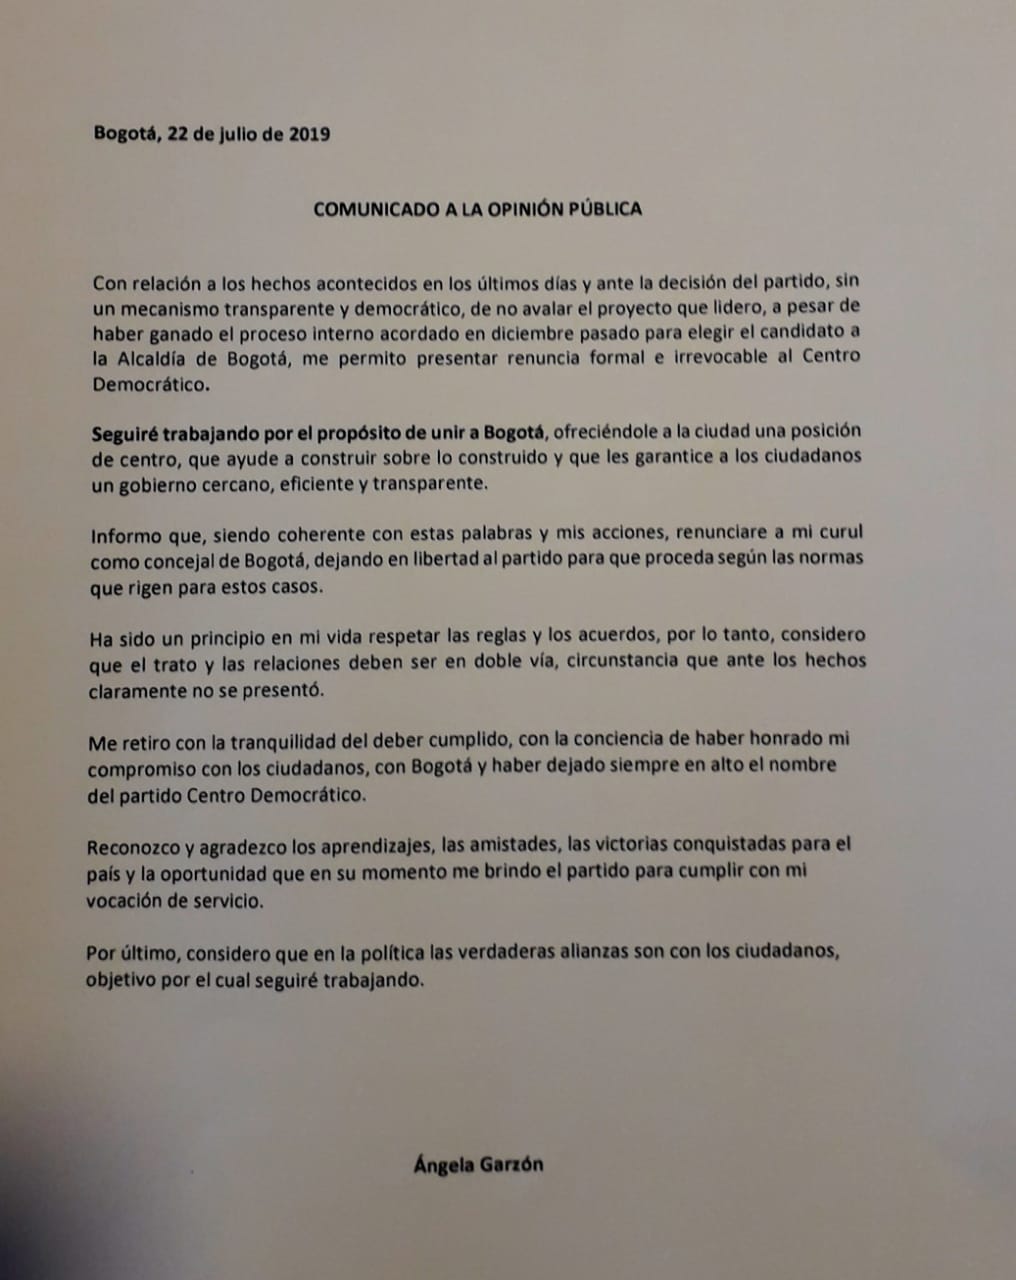 Ángela Garzón renuncia al Centro Democrático, luego de retiro de aval para  la Alcaldía de Bogotá | ZONA CERO